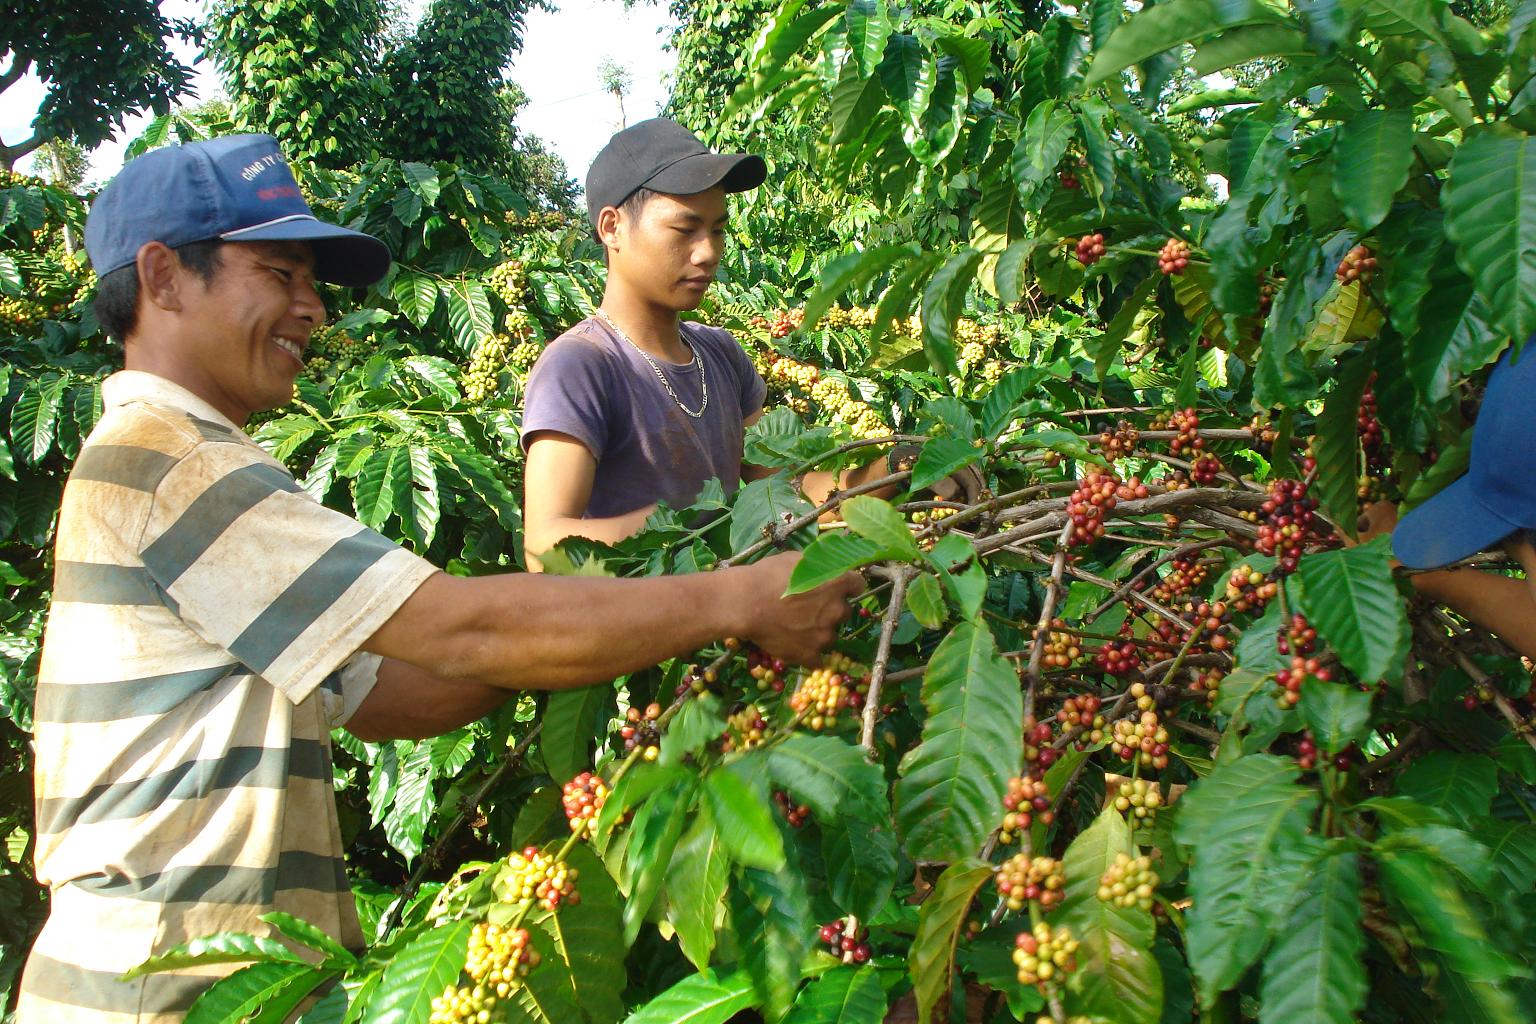  Sản xuất cà phê theo hình thức nông hộ hiện phổ biến ở Tây nguyên - Ảnh: Trung Chuyên